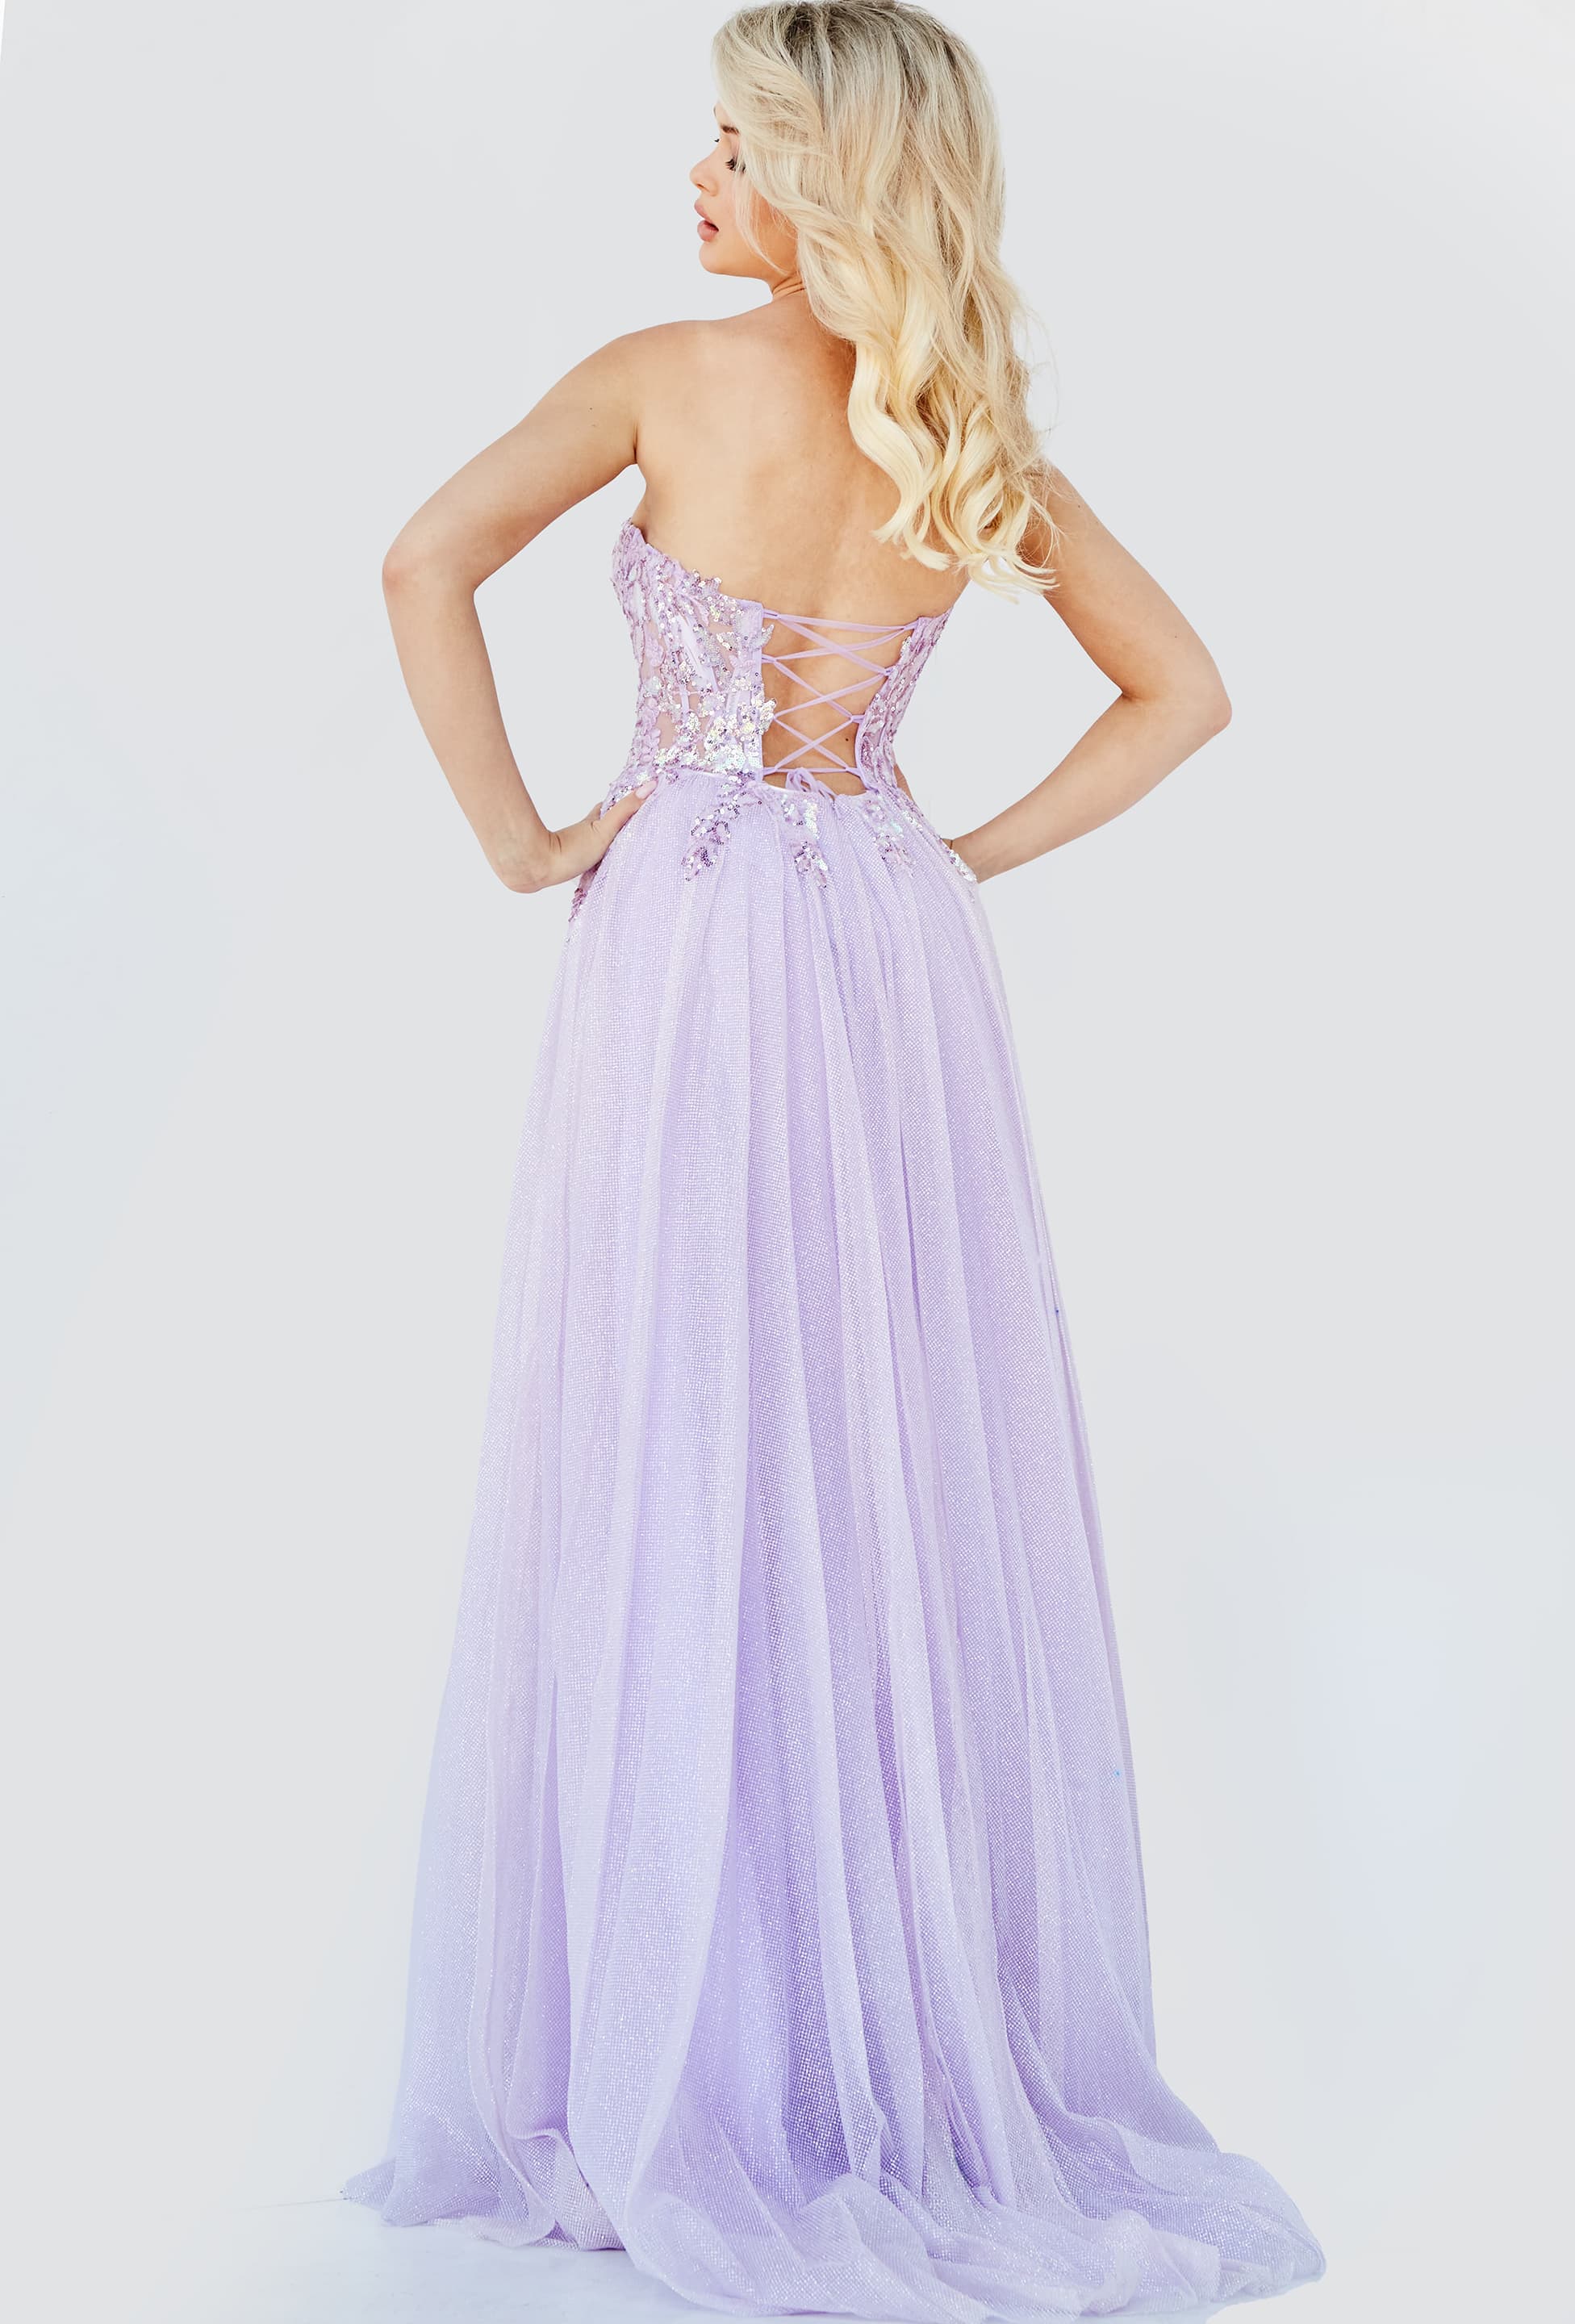 JVN07434 Lavender Embroidered Bodice Prom Dress